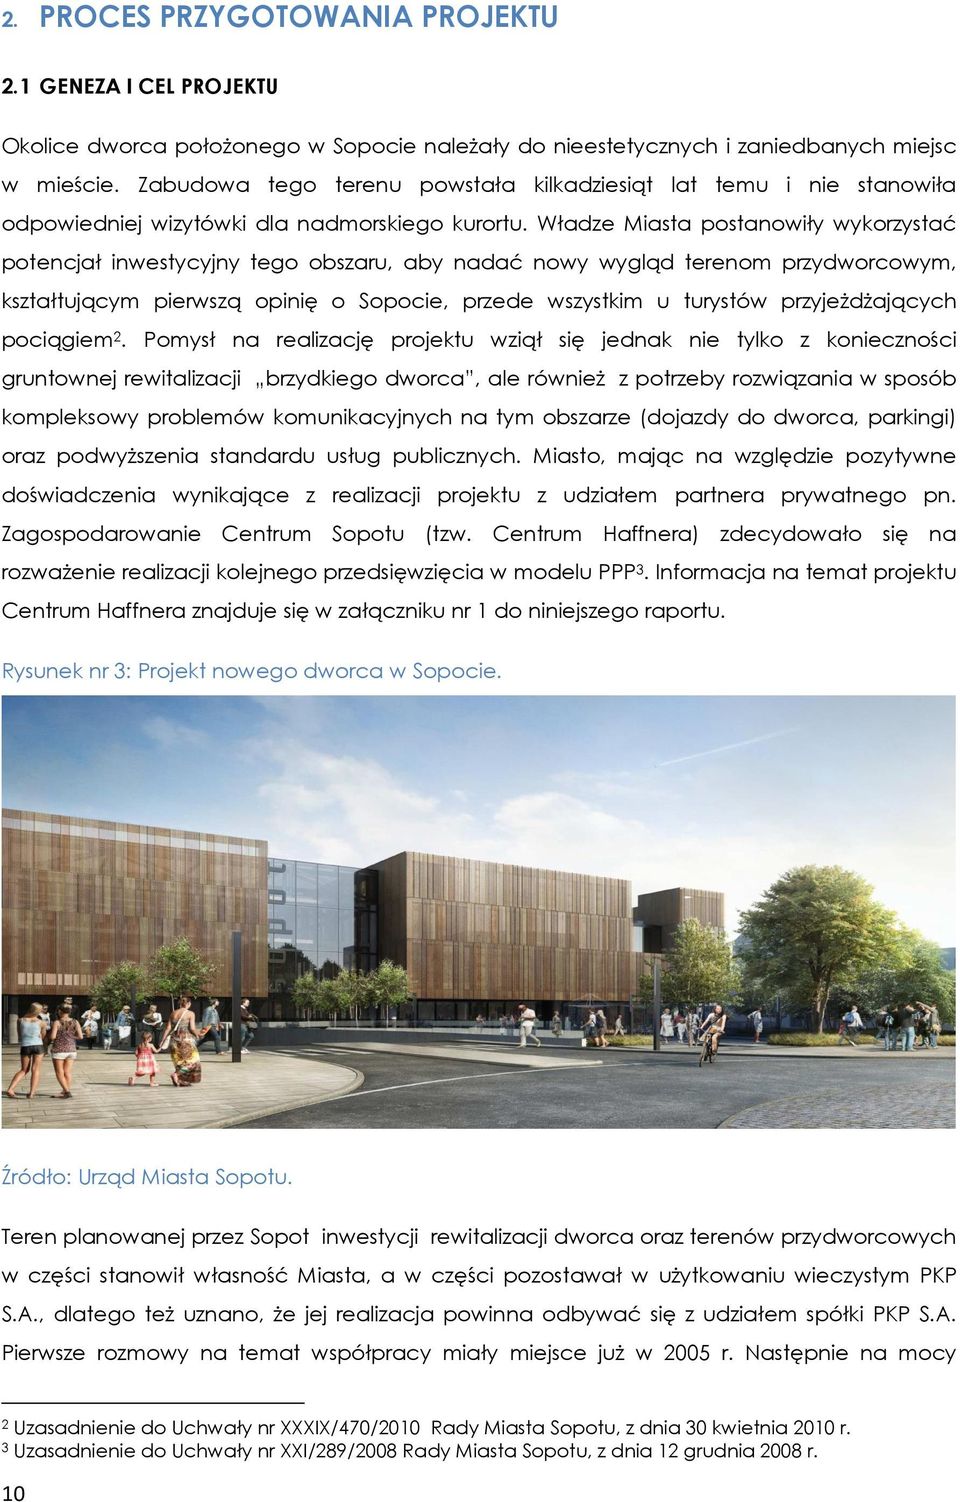 Władze Miasta postanowiły wykorzystać potencjał inwestycyjny tego obszaru, aby nadać nowy wygląd terenom przydworcowym, kształtującym pierwszą opinię o Sopocie, przede wszystkim u turystów